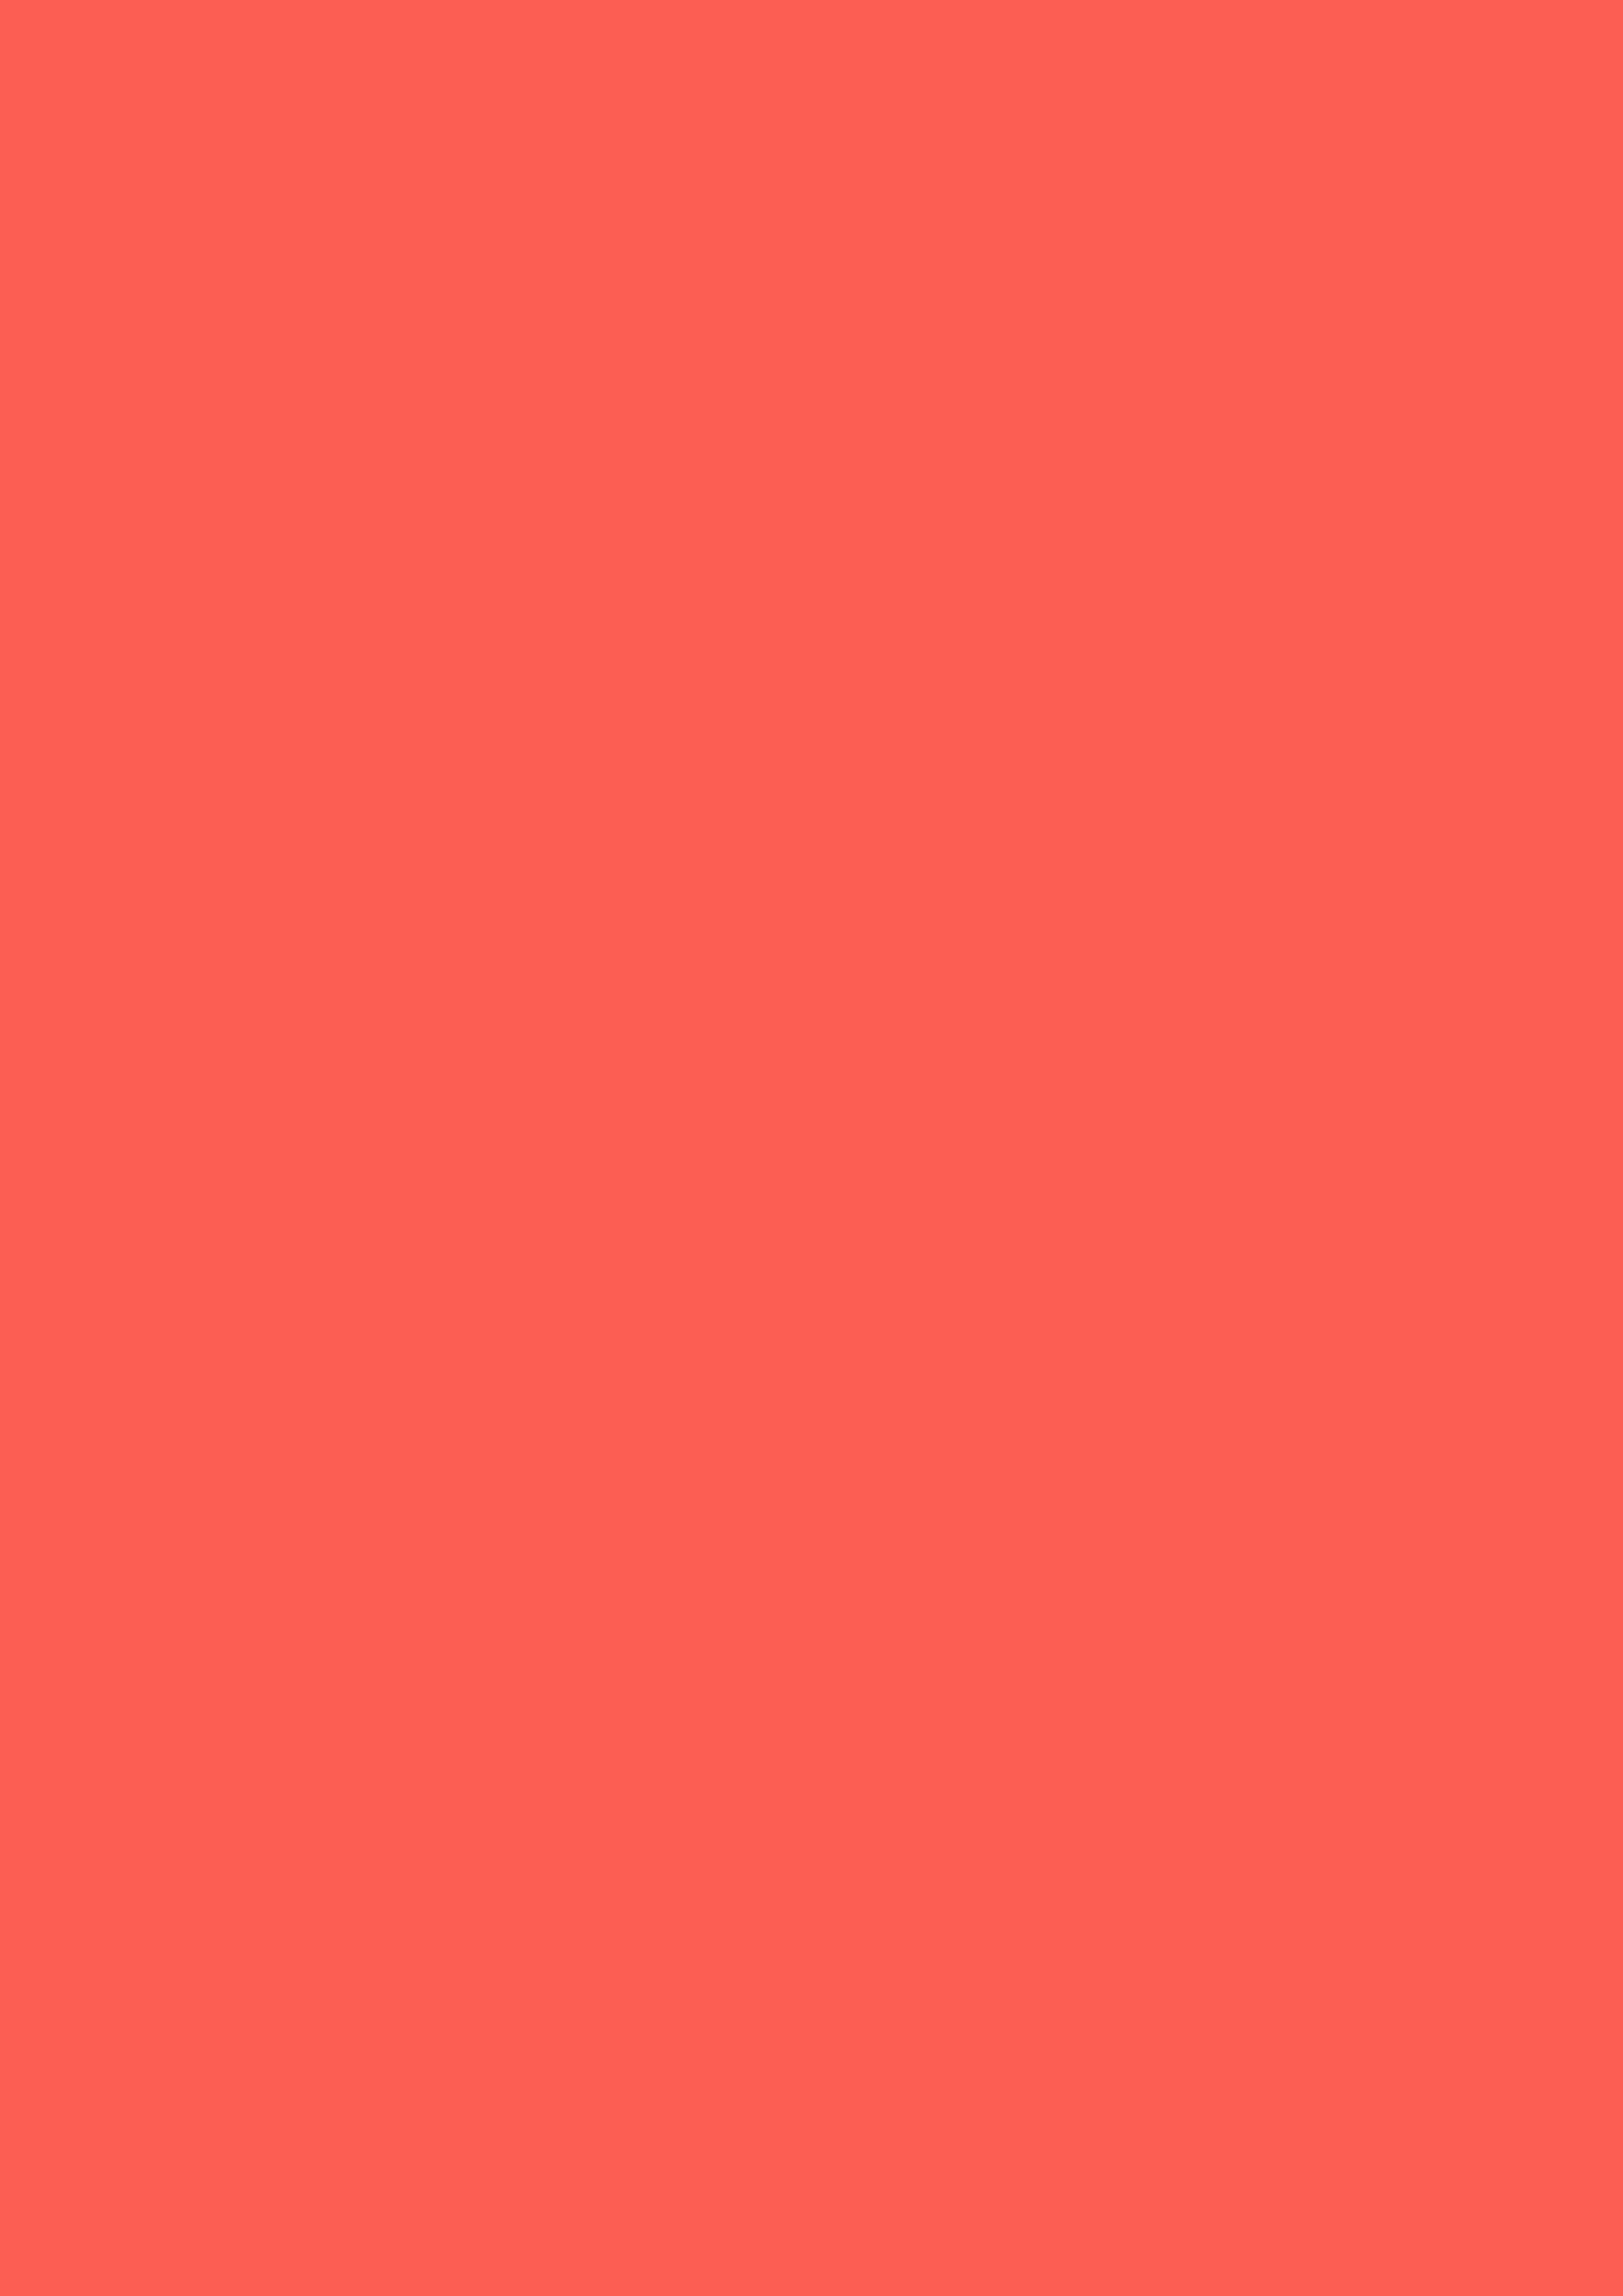 2480x3508 Sunset Orange Solid Color Background